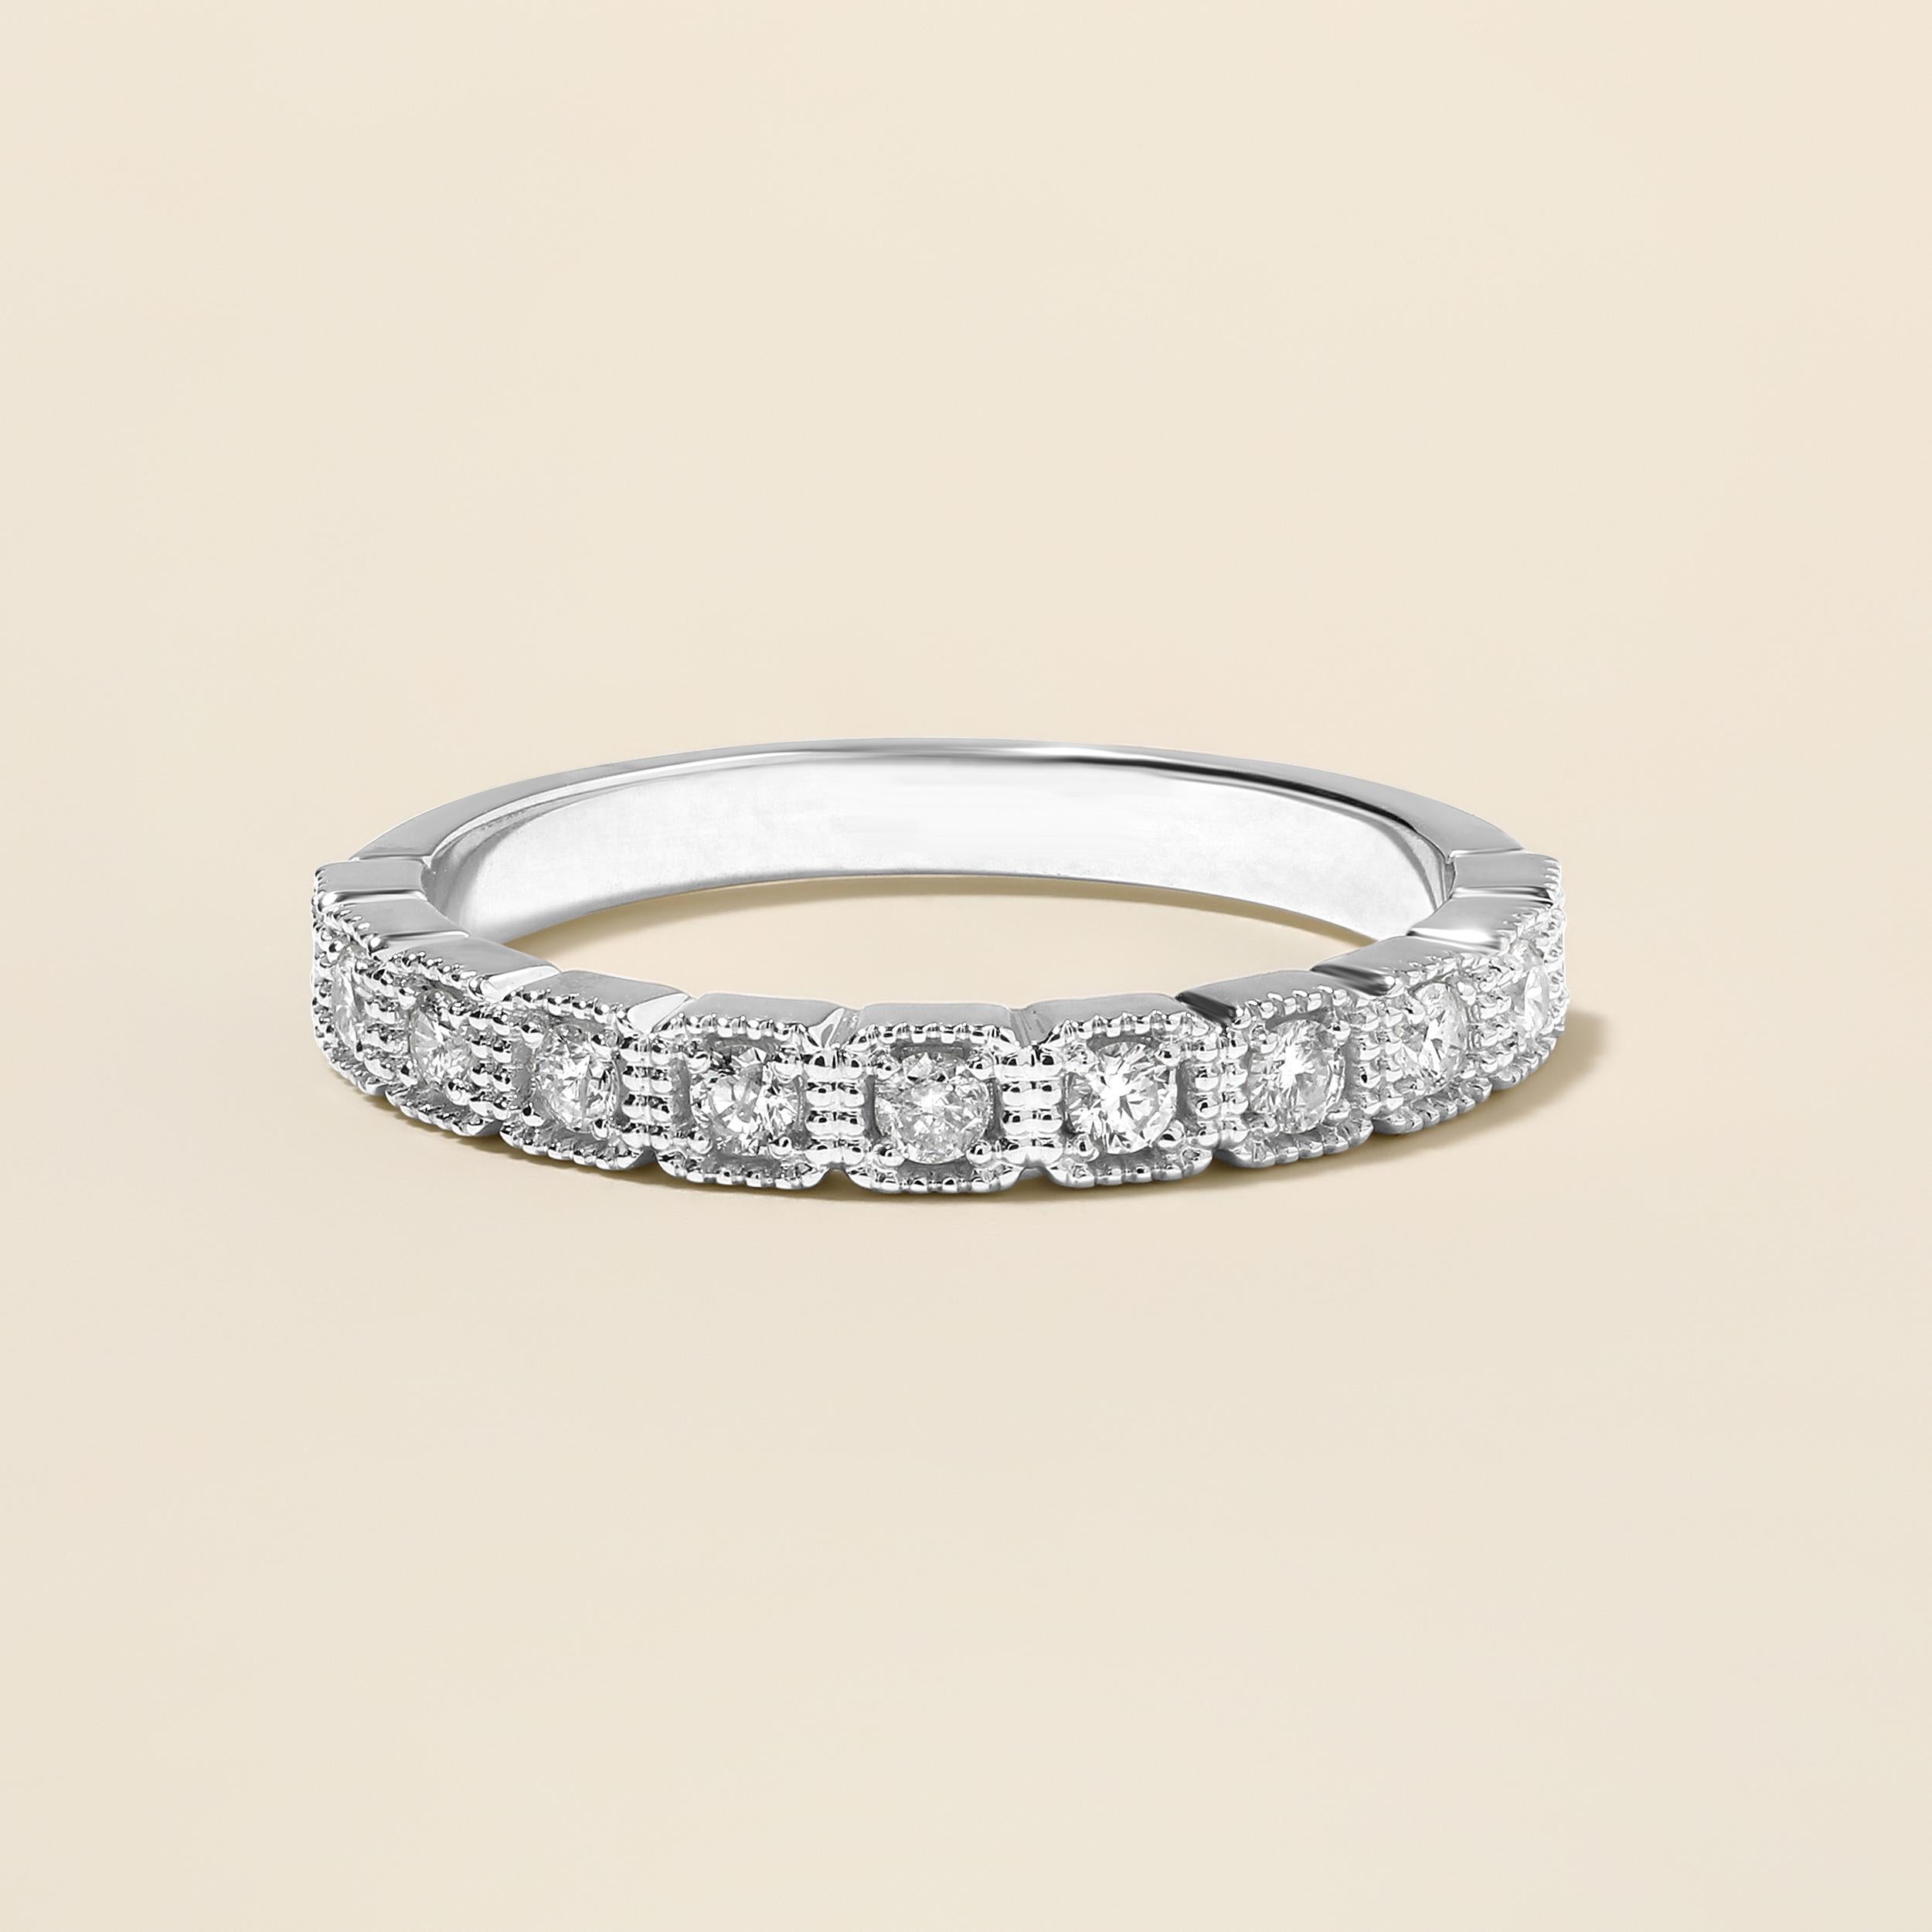 Ring Größe: US 7

Gefertigt in 2,97 Gramm 14K Weißgold, enthält der Ring 11 Steine aus runden natürlichen Diamanten mit insgesamt 0,31 Karat in G-H Farbe und I1-I2 Klarheit.clarity.combined mit 1 Stein aus runden Solitär natürlichen Diamanten mit